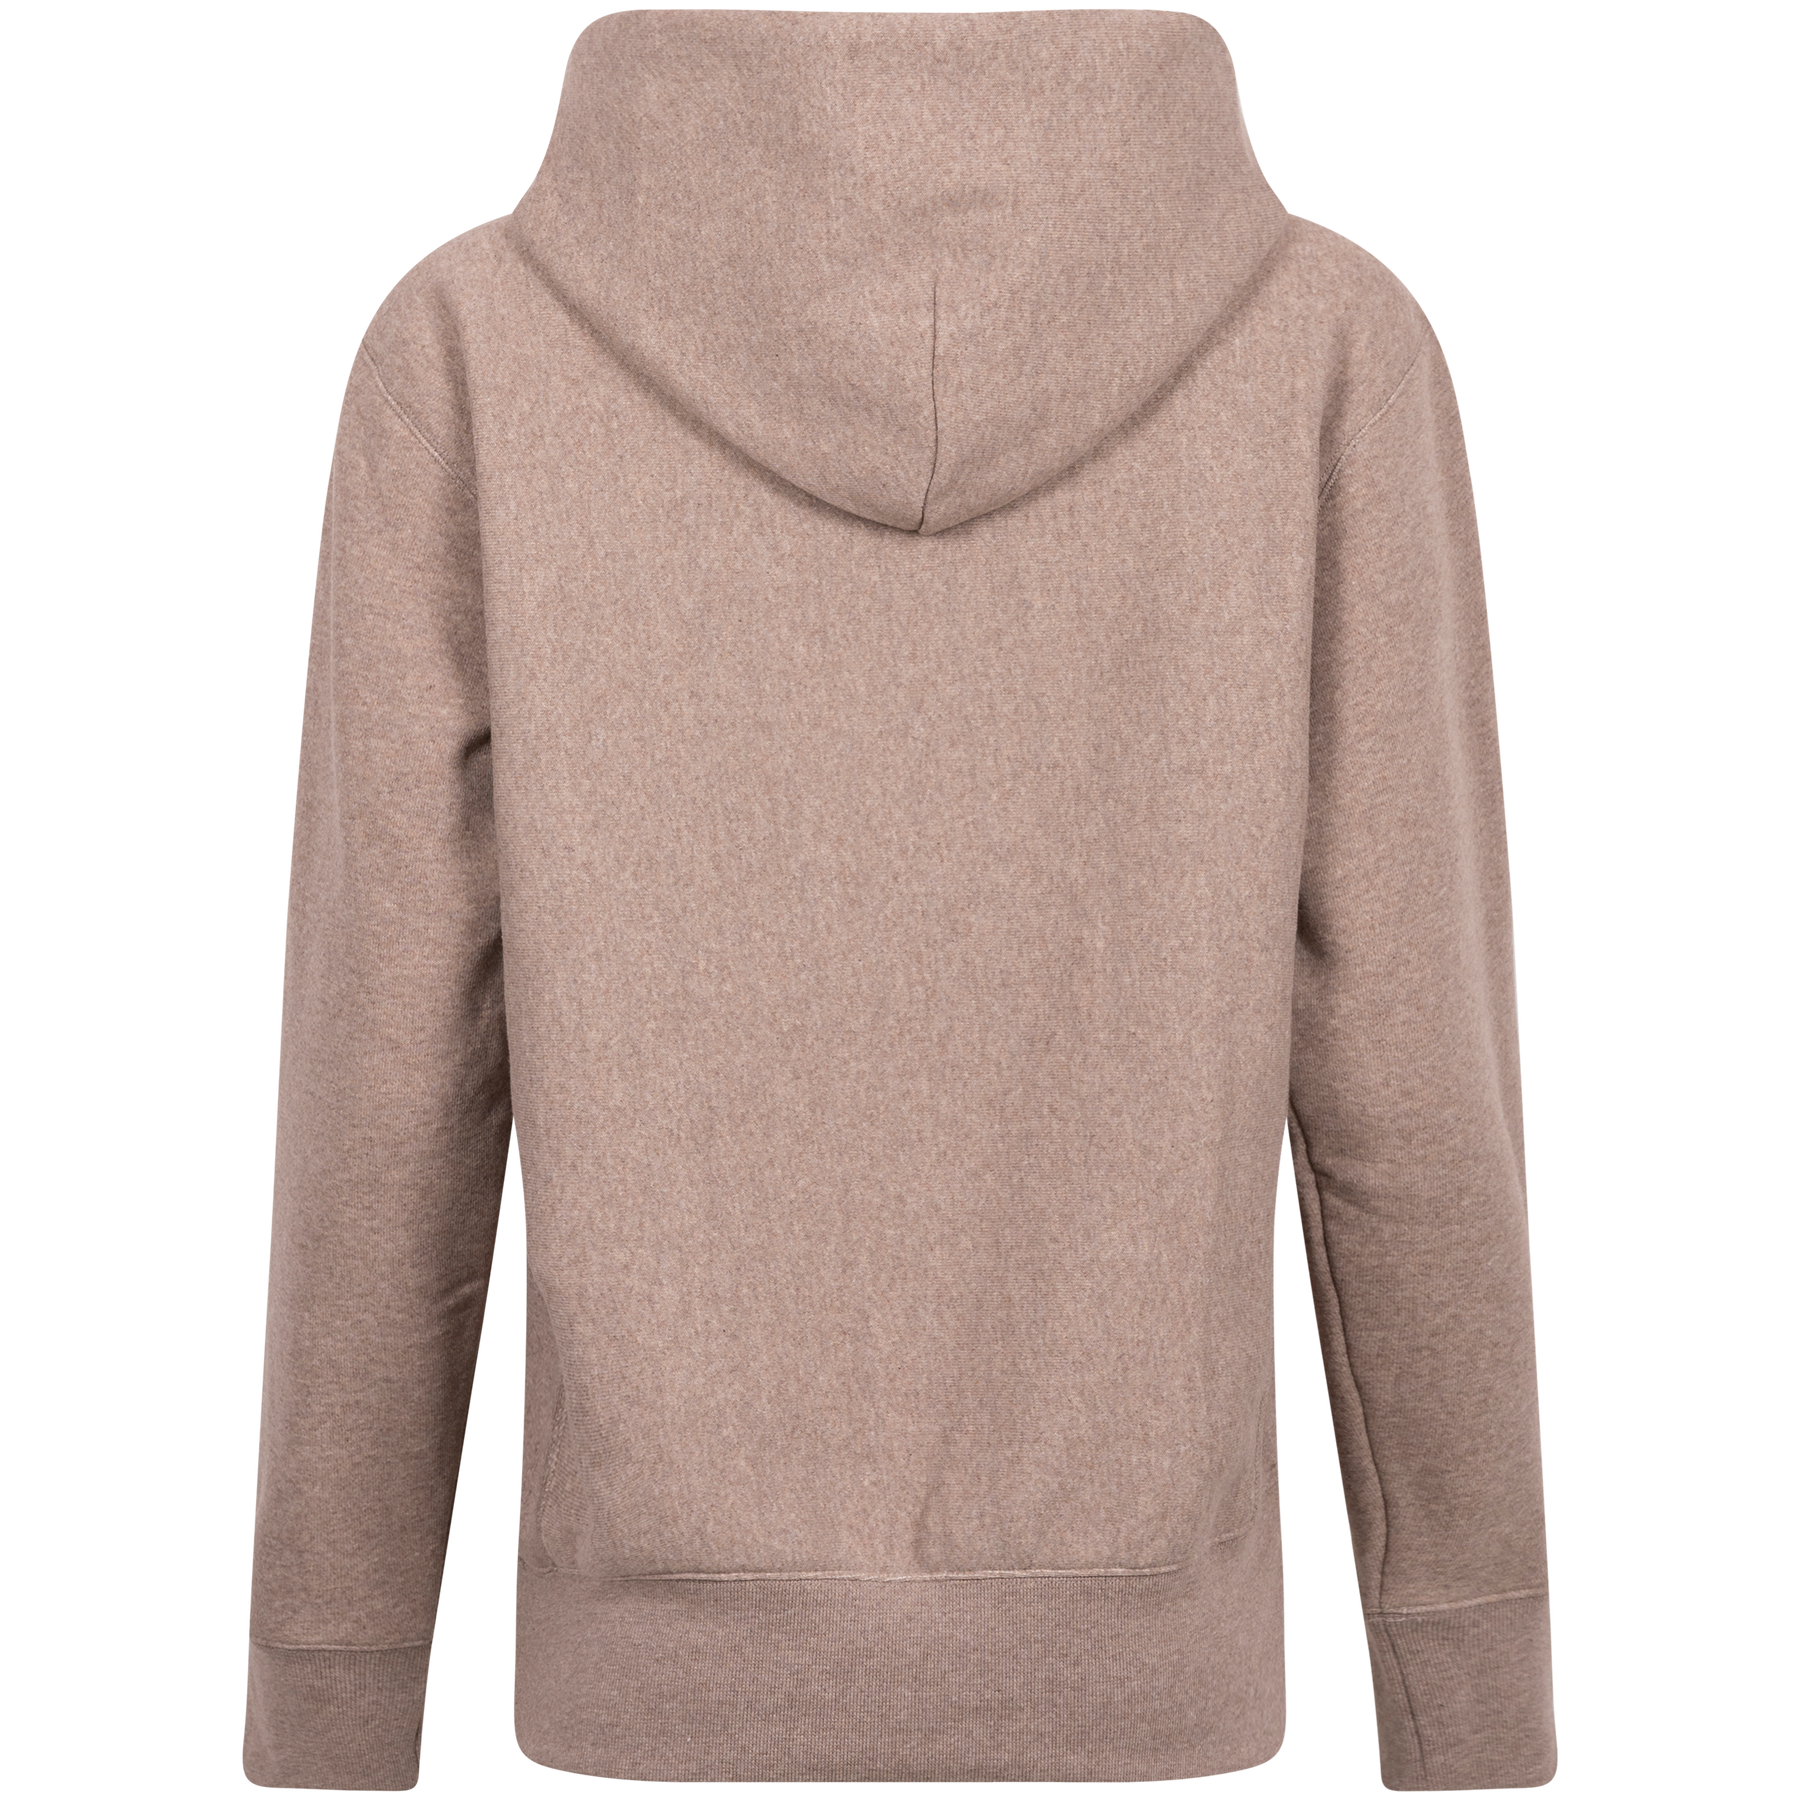 Hooded Sweatshirt - Beige Melange